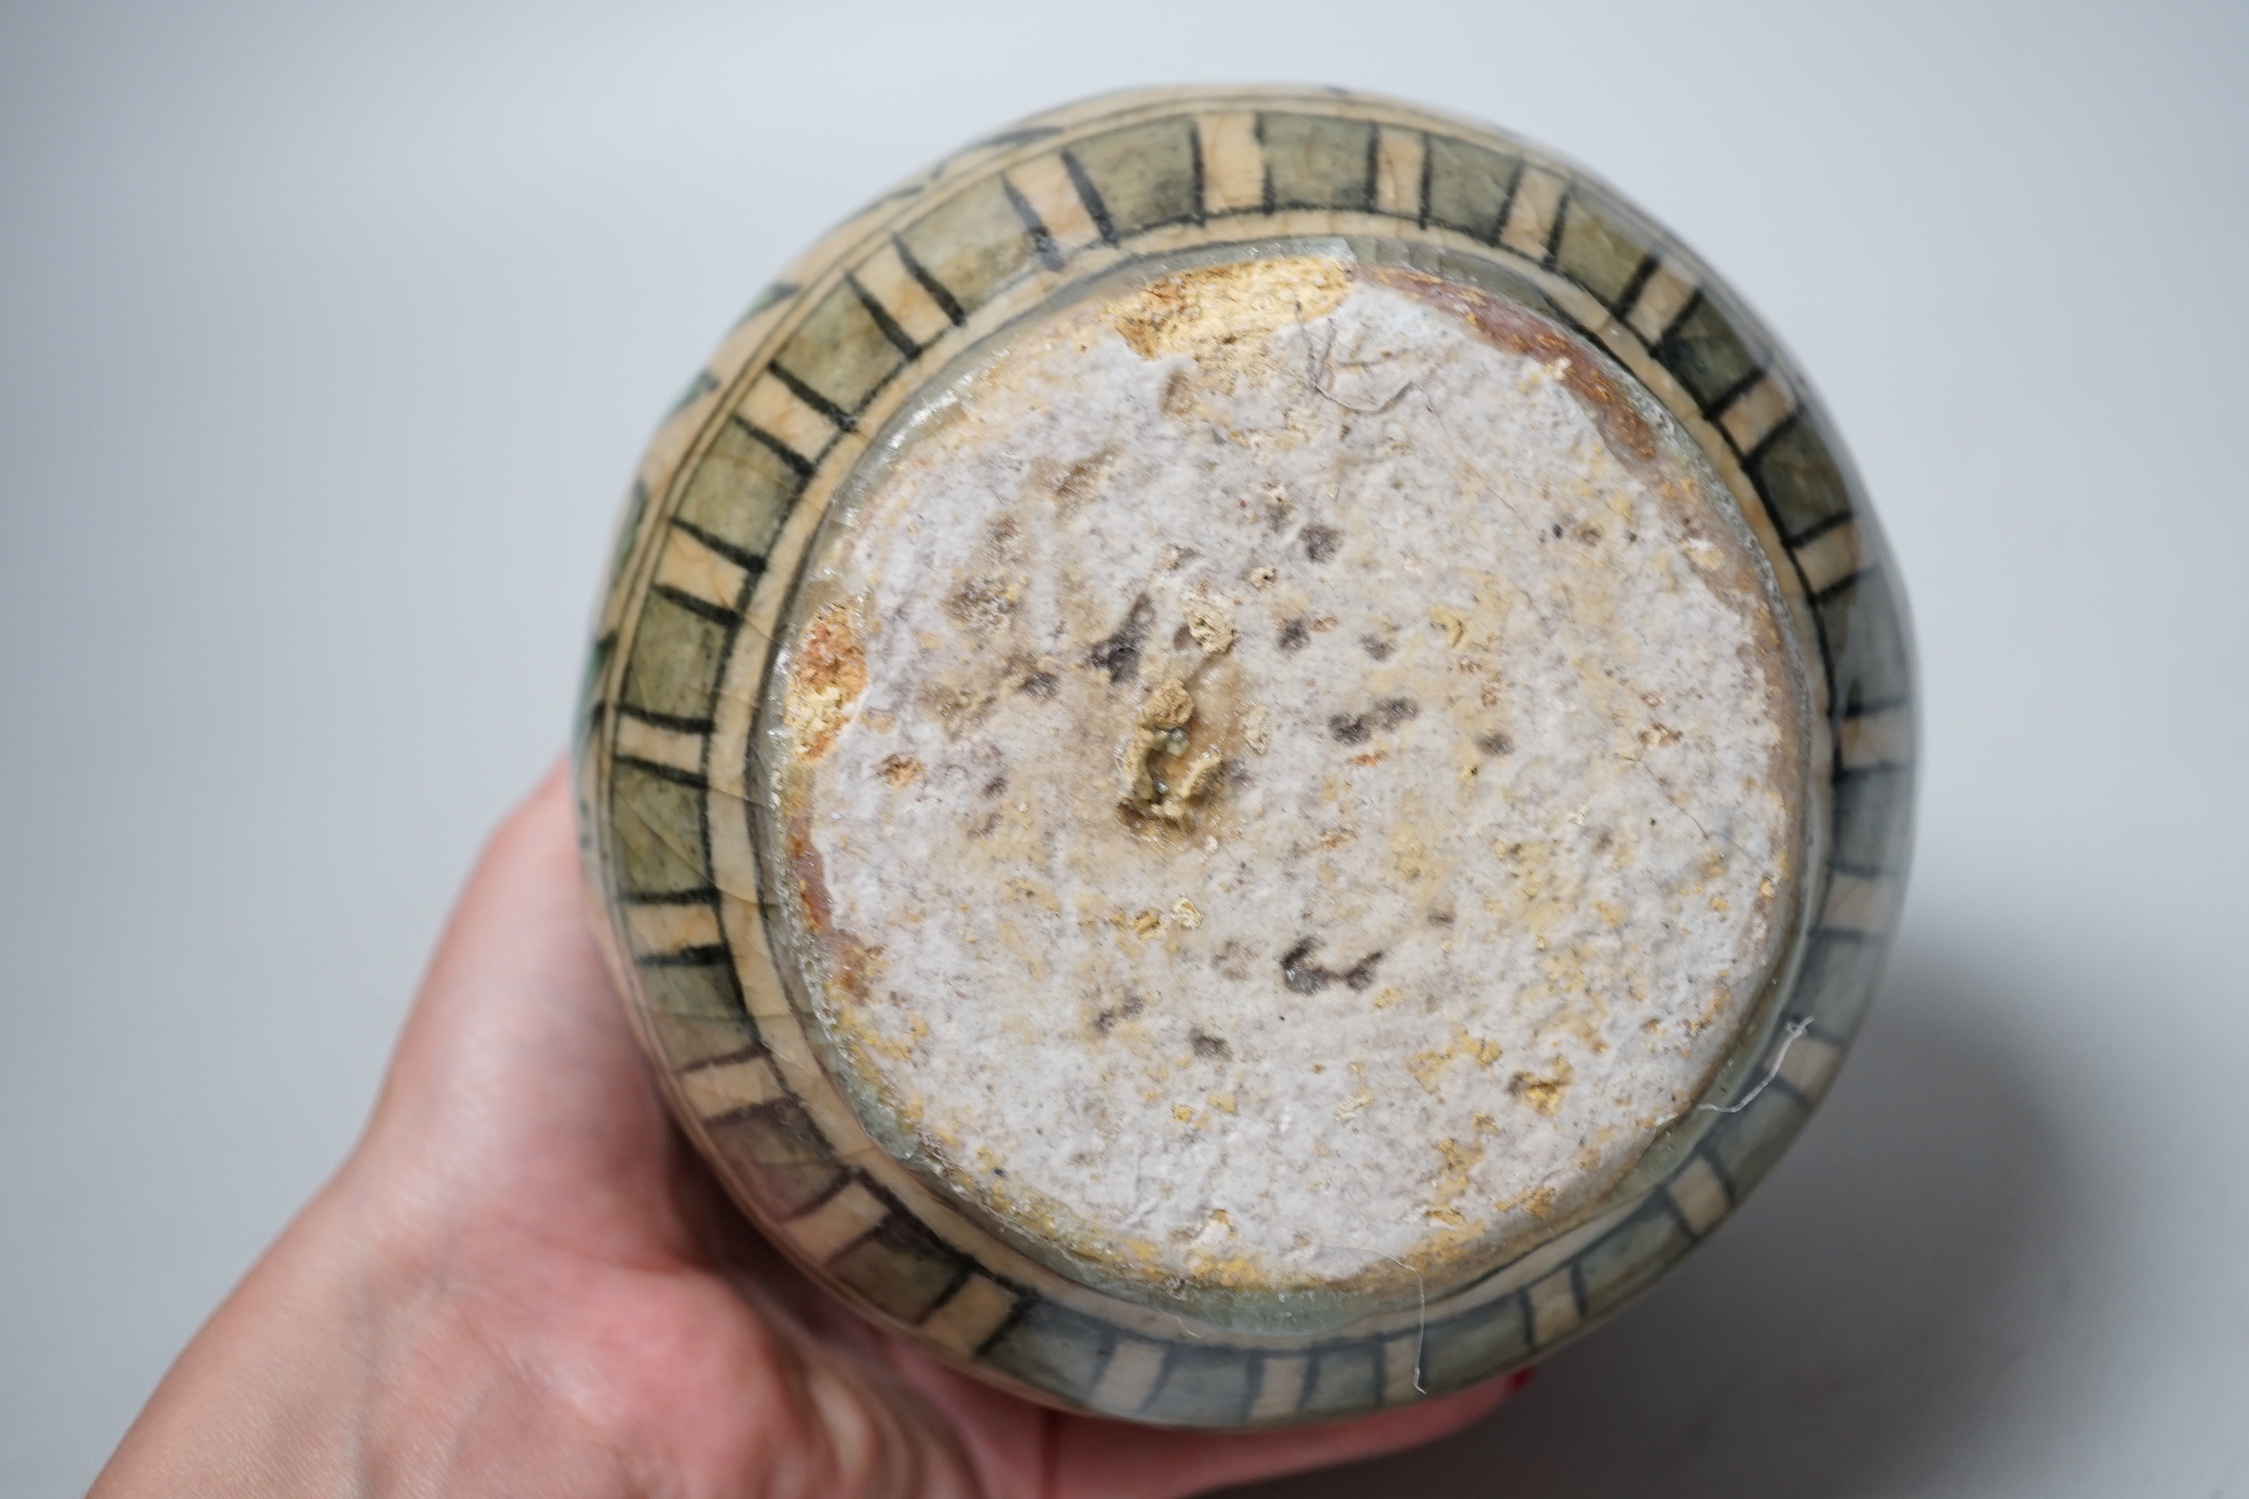 A Persian Fritware pottery jar, Qajar dynasty,12cm high